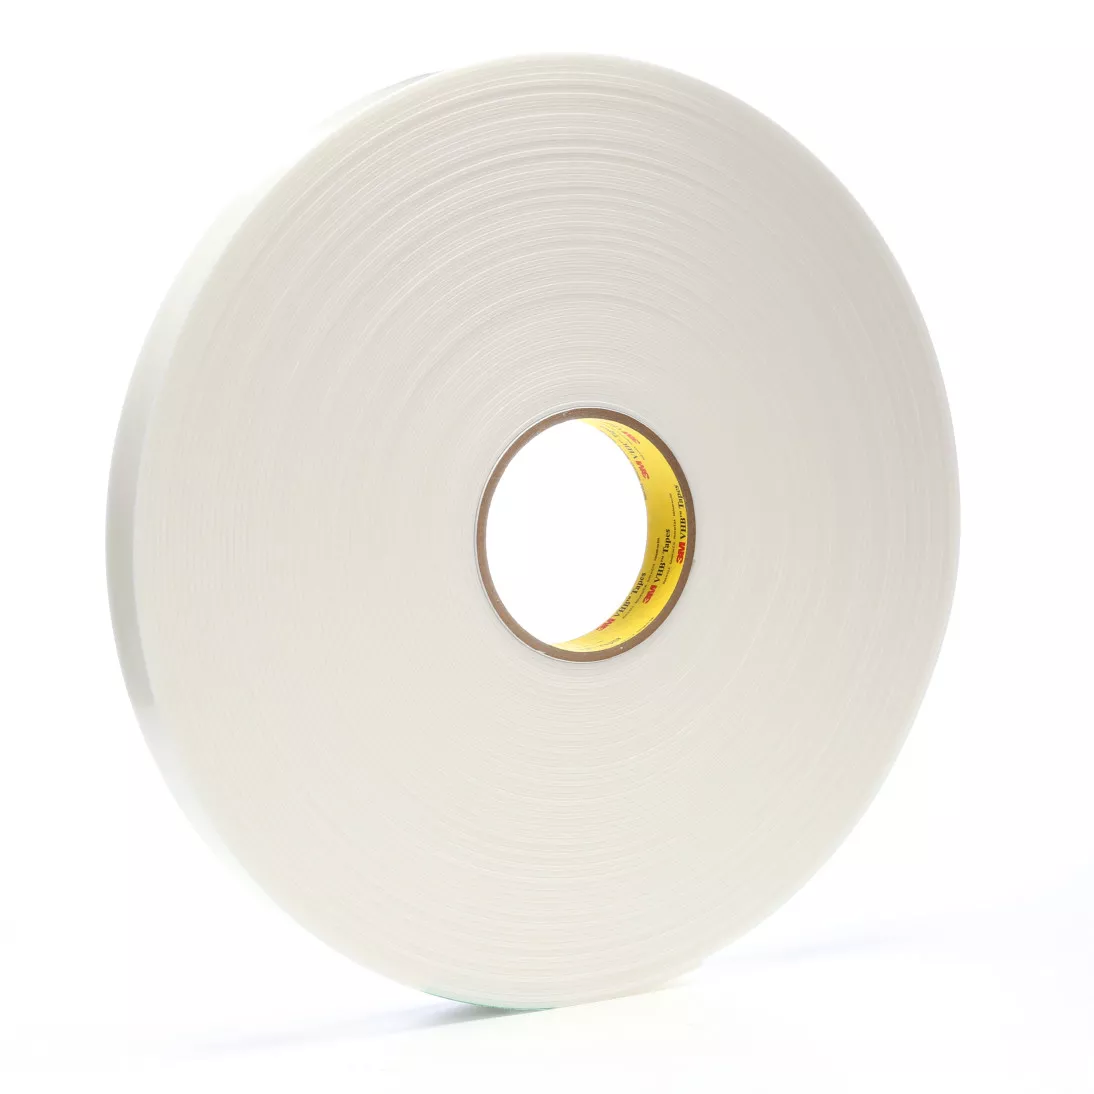 3M™ VHB™ Tape 4955, White, 1 in x 36 yd, 80 mil, 9 rolls per case